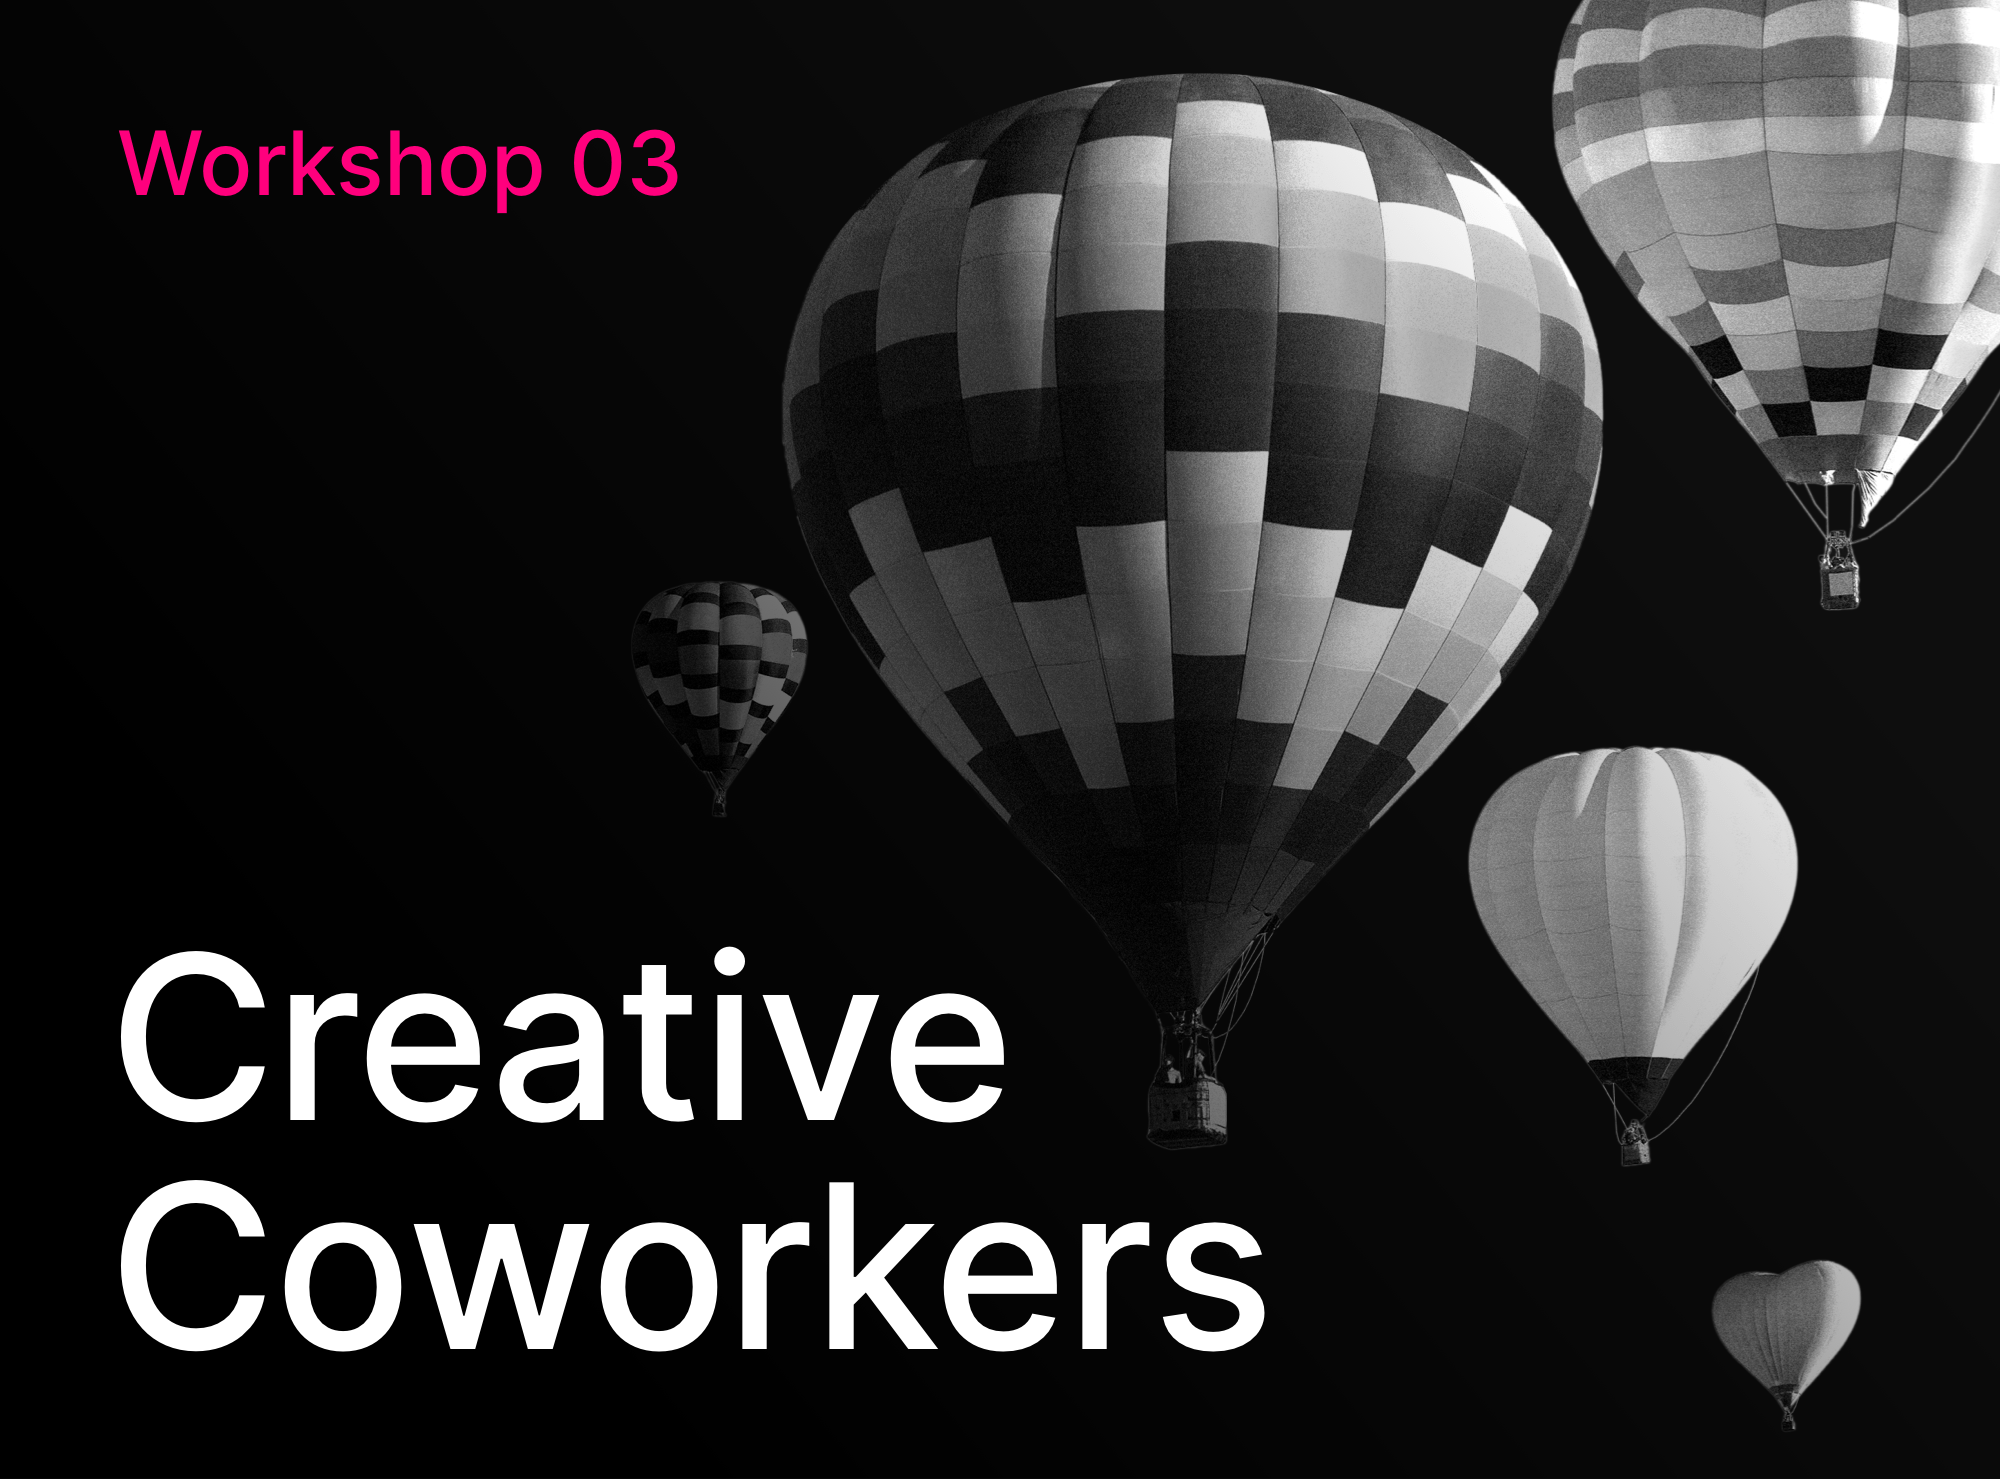 Workshop 03 - Creative Coworkers